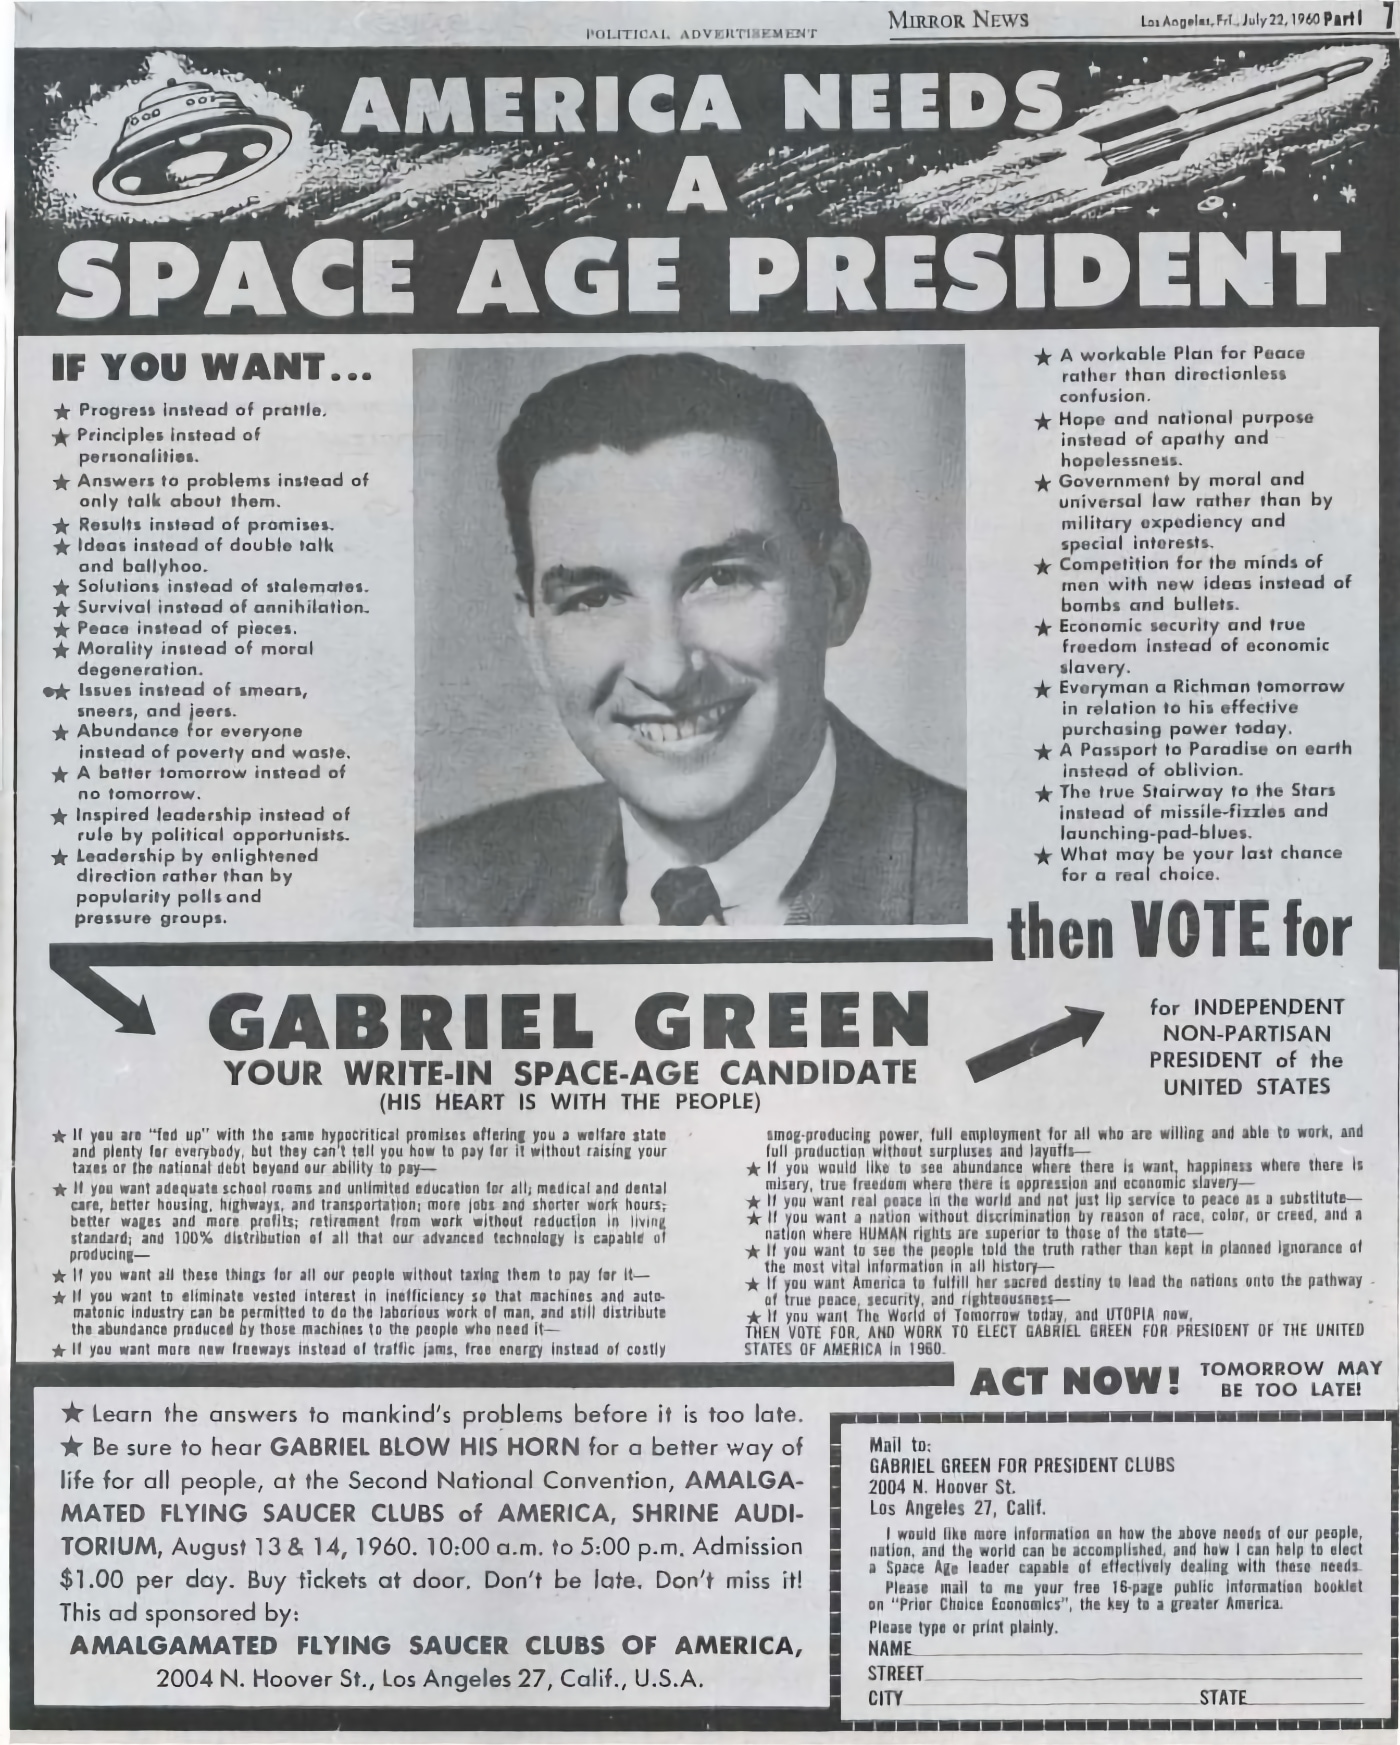 Publicidad de Gabriel Green en revistas y periódicos en 1960.